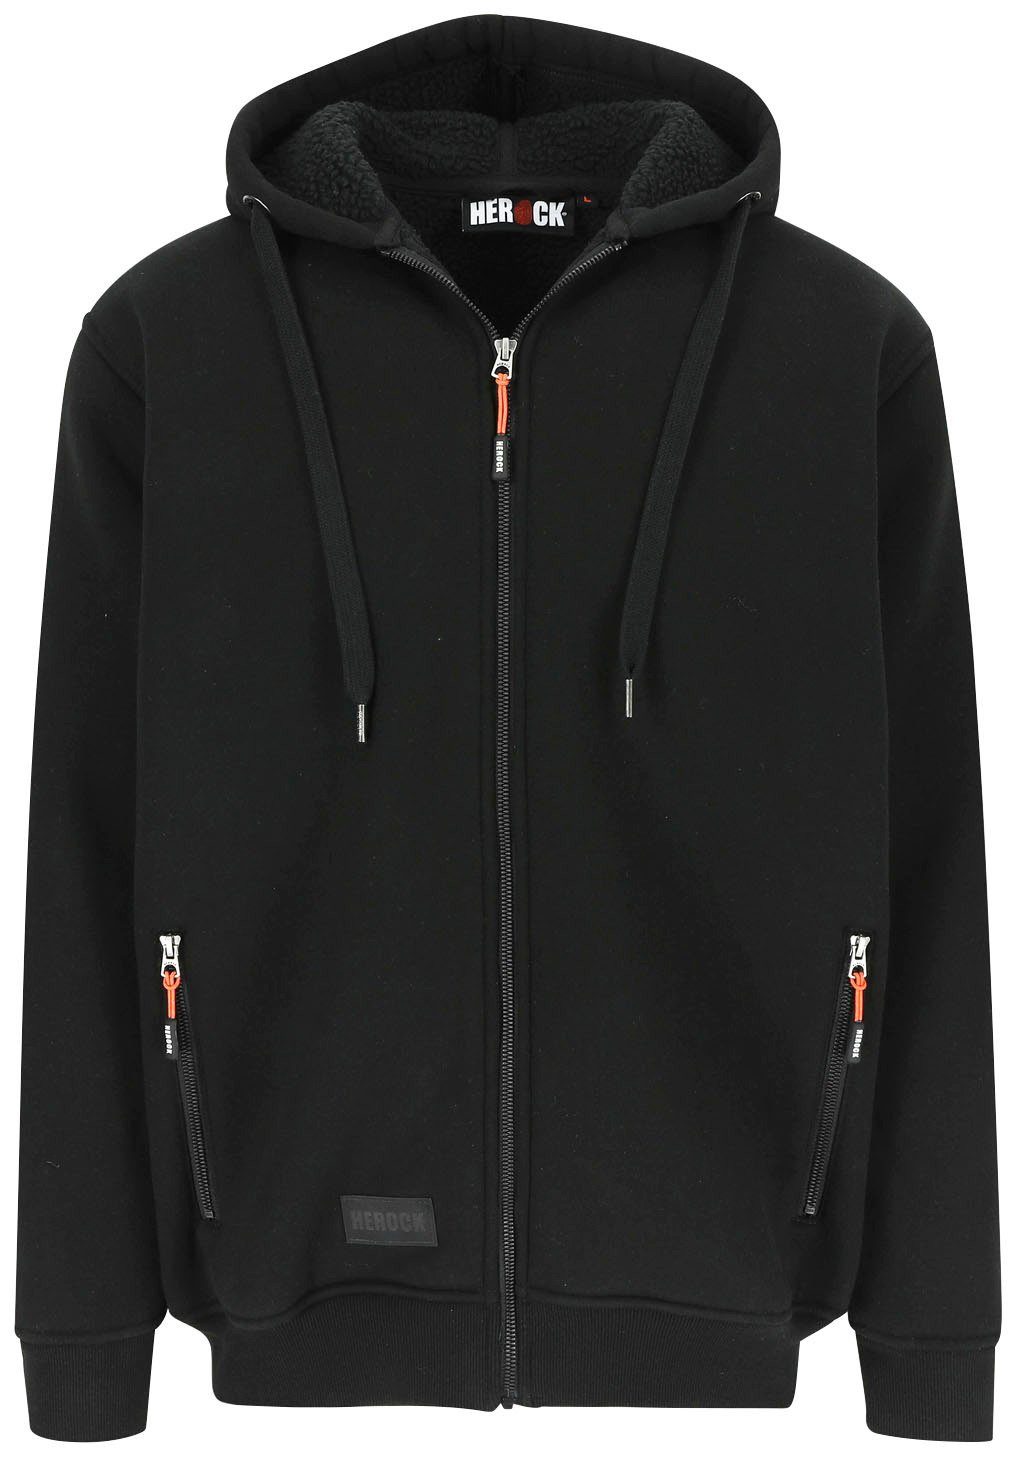 Herock Sweater OTIS Mit Kapuze, langem Reißverschluβ, HEROCK®-Aufdruck, warm und angenehm schwarz